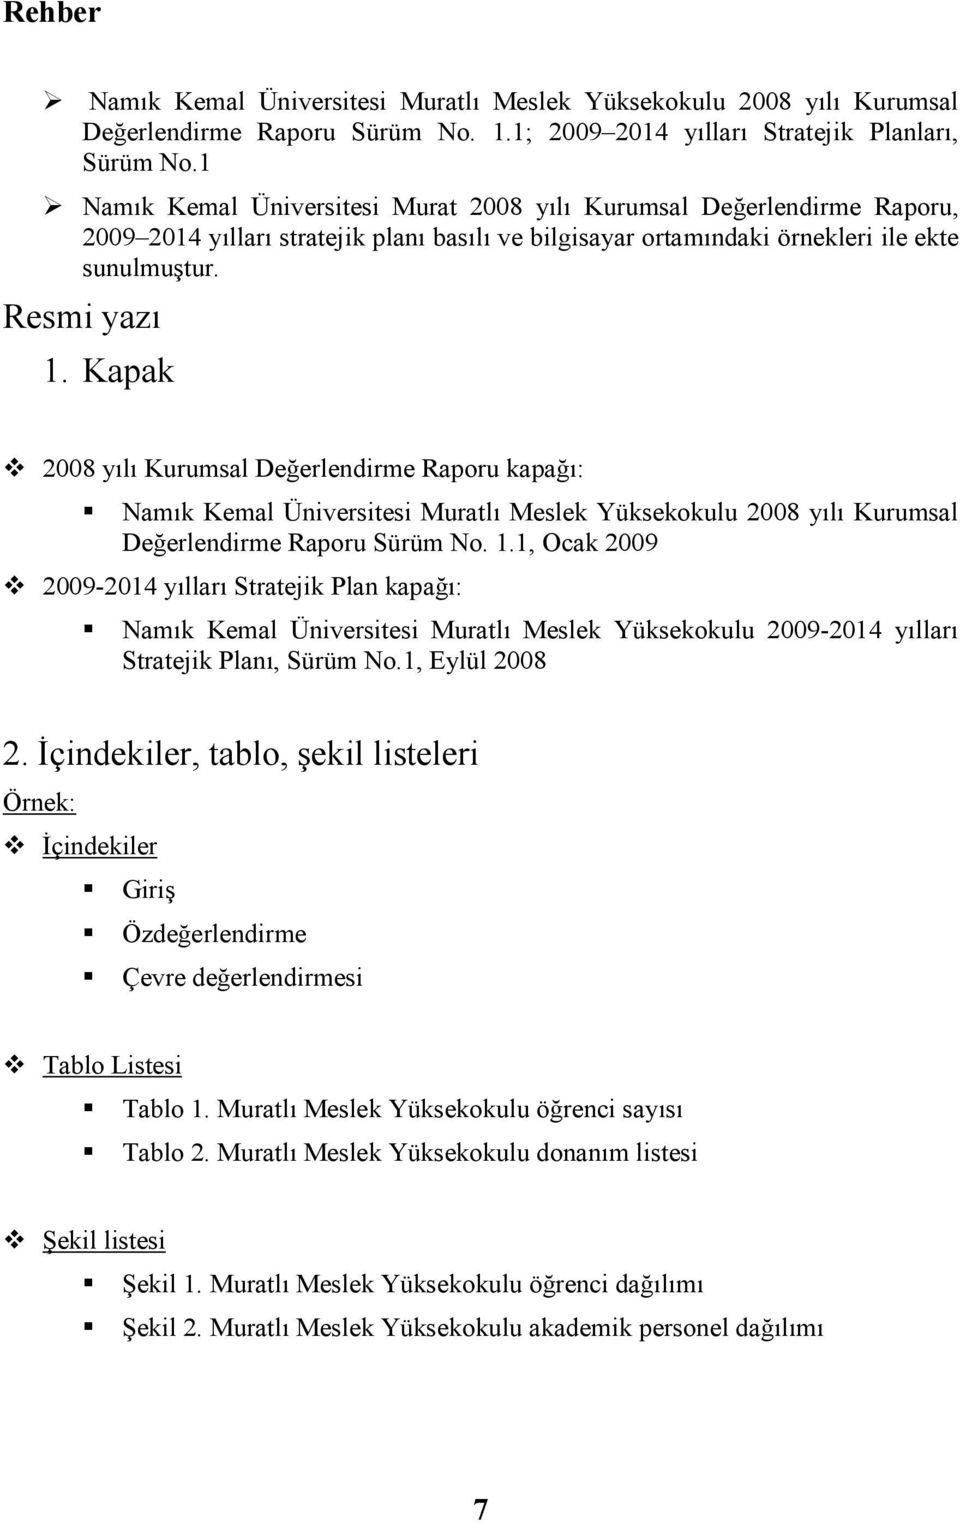 Kapak 2008 yılı Kurumsal Değerlendirme Raporu kapağı: Namık Kemal Üniversitesi Muratlı Meslek Yüksekokulu 2008 yılı Kurumsal Değerlendirme Raporu Sürüm No. 1.